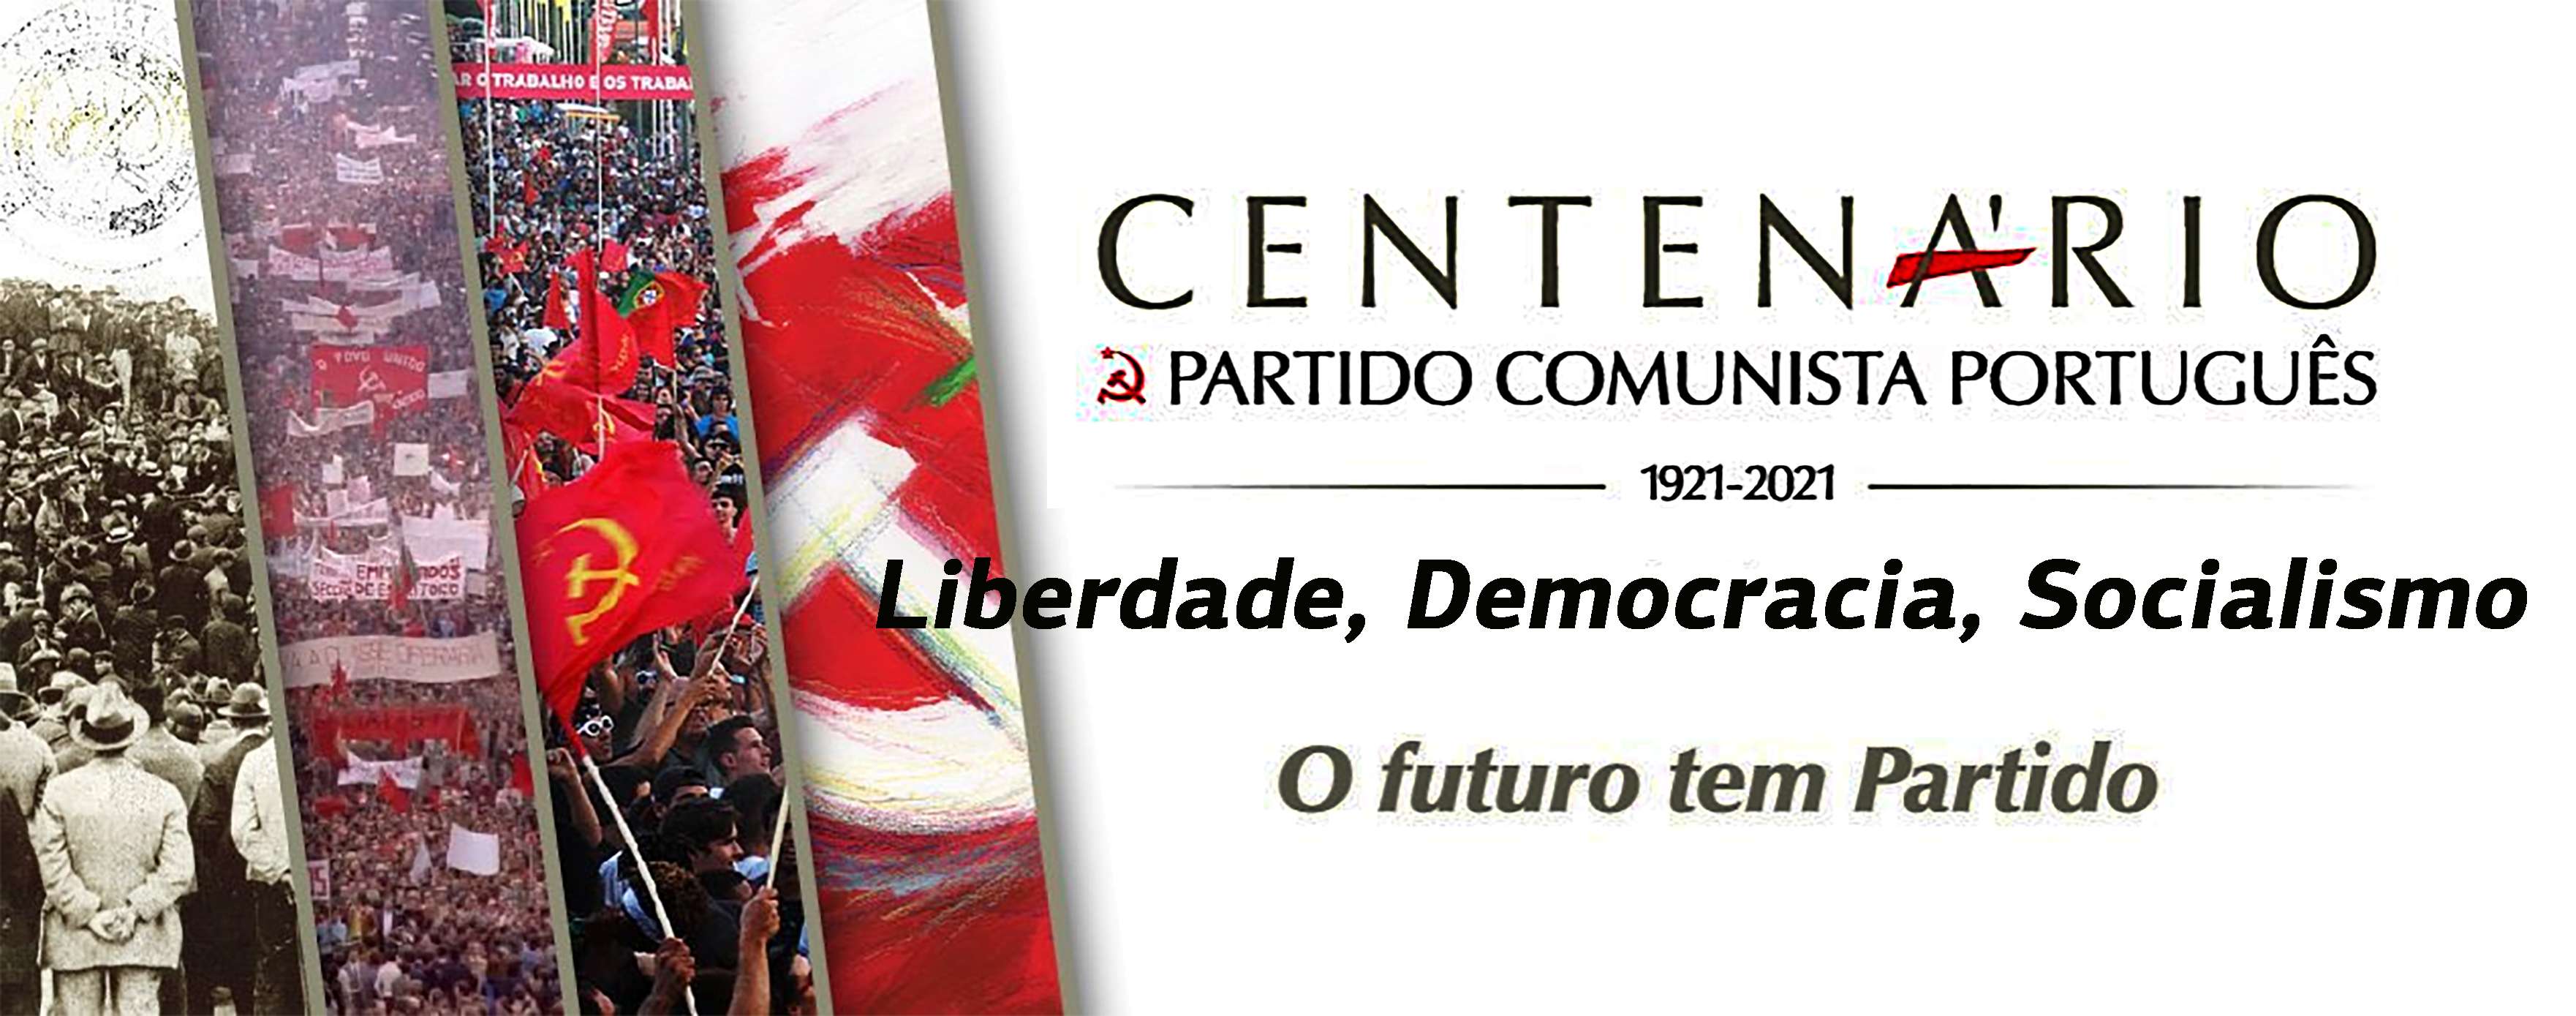 Centenário do Partido Comunista Português Liberdade Democracia Socialismo twitter